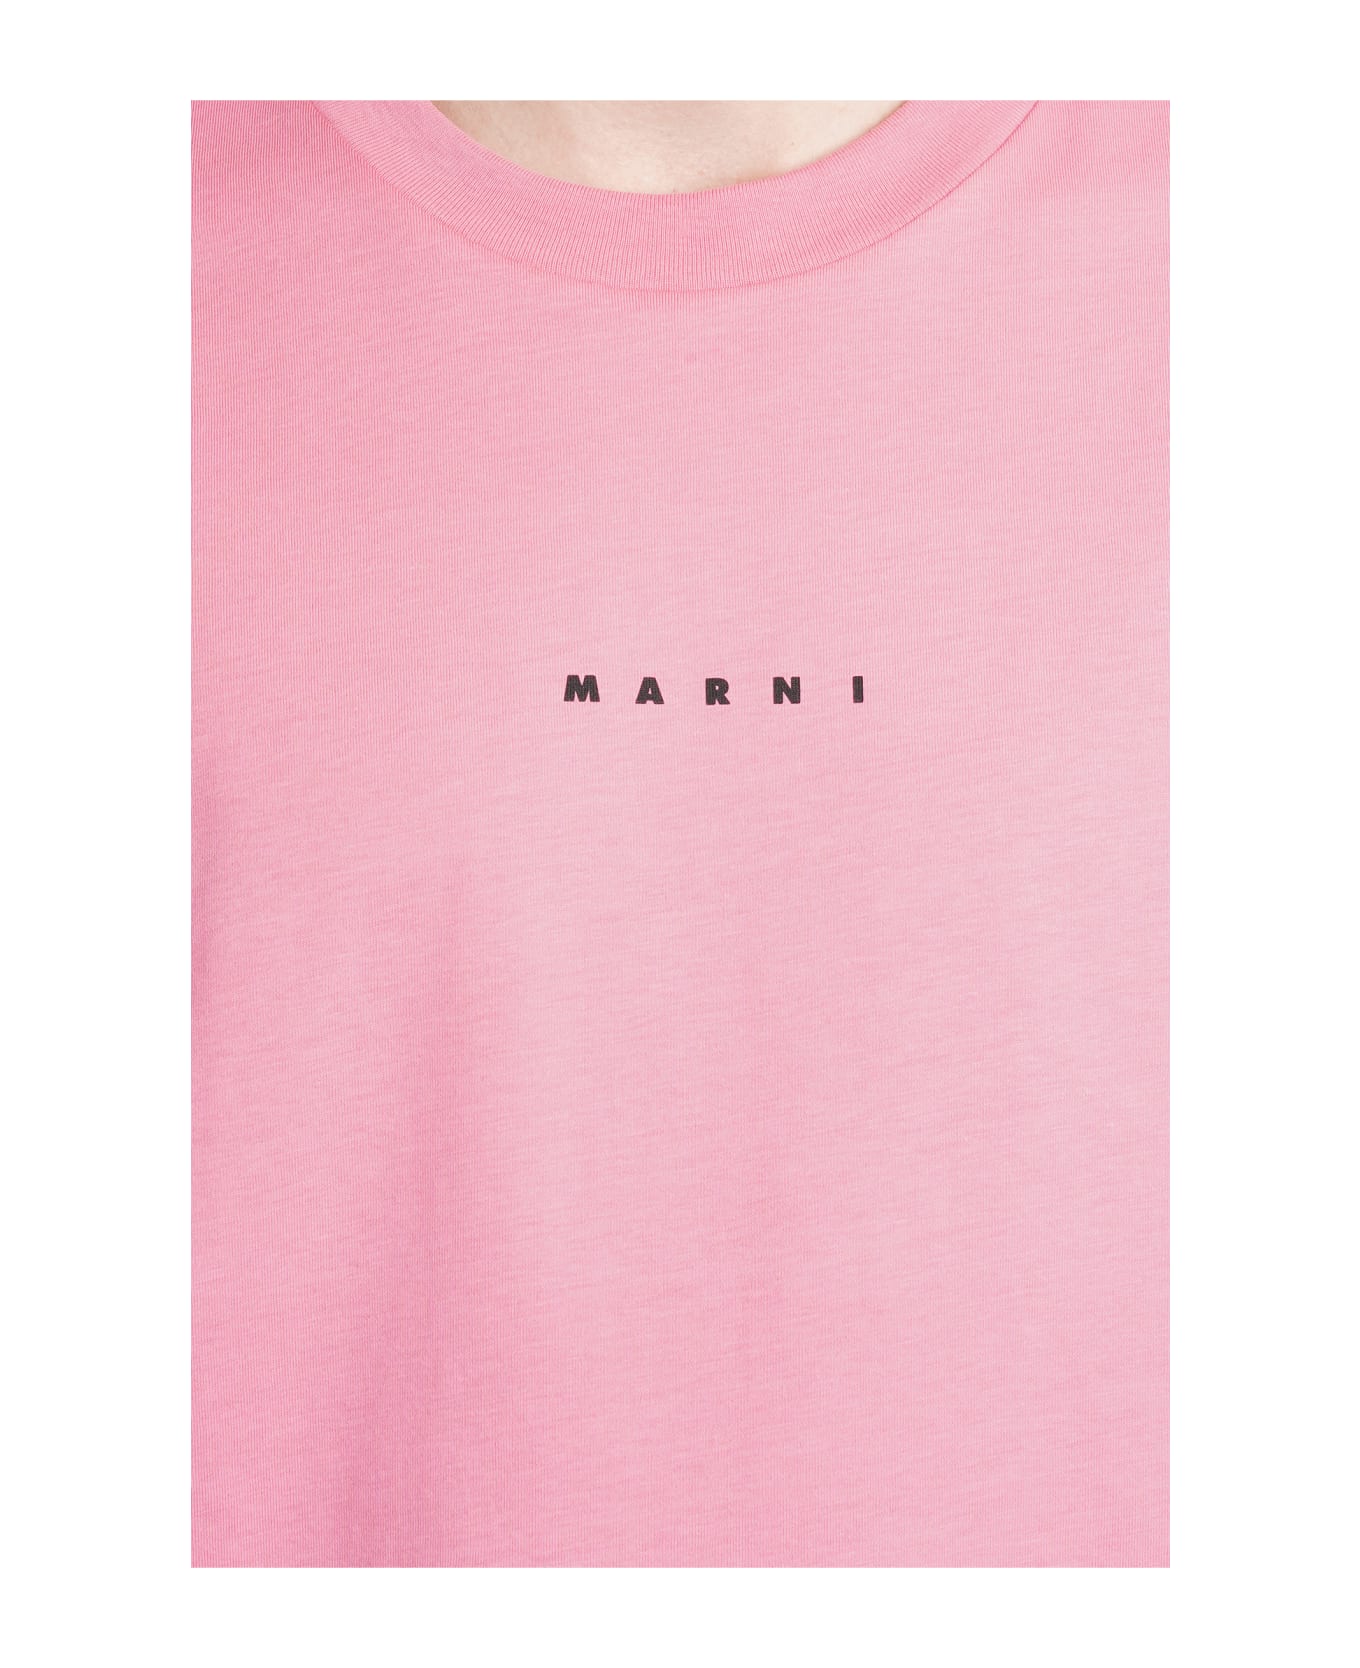 Marni T-shirt In Rose-pink Cotton - rose-pink